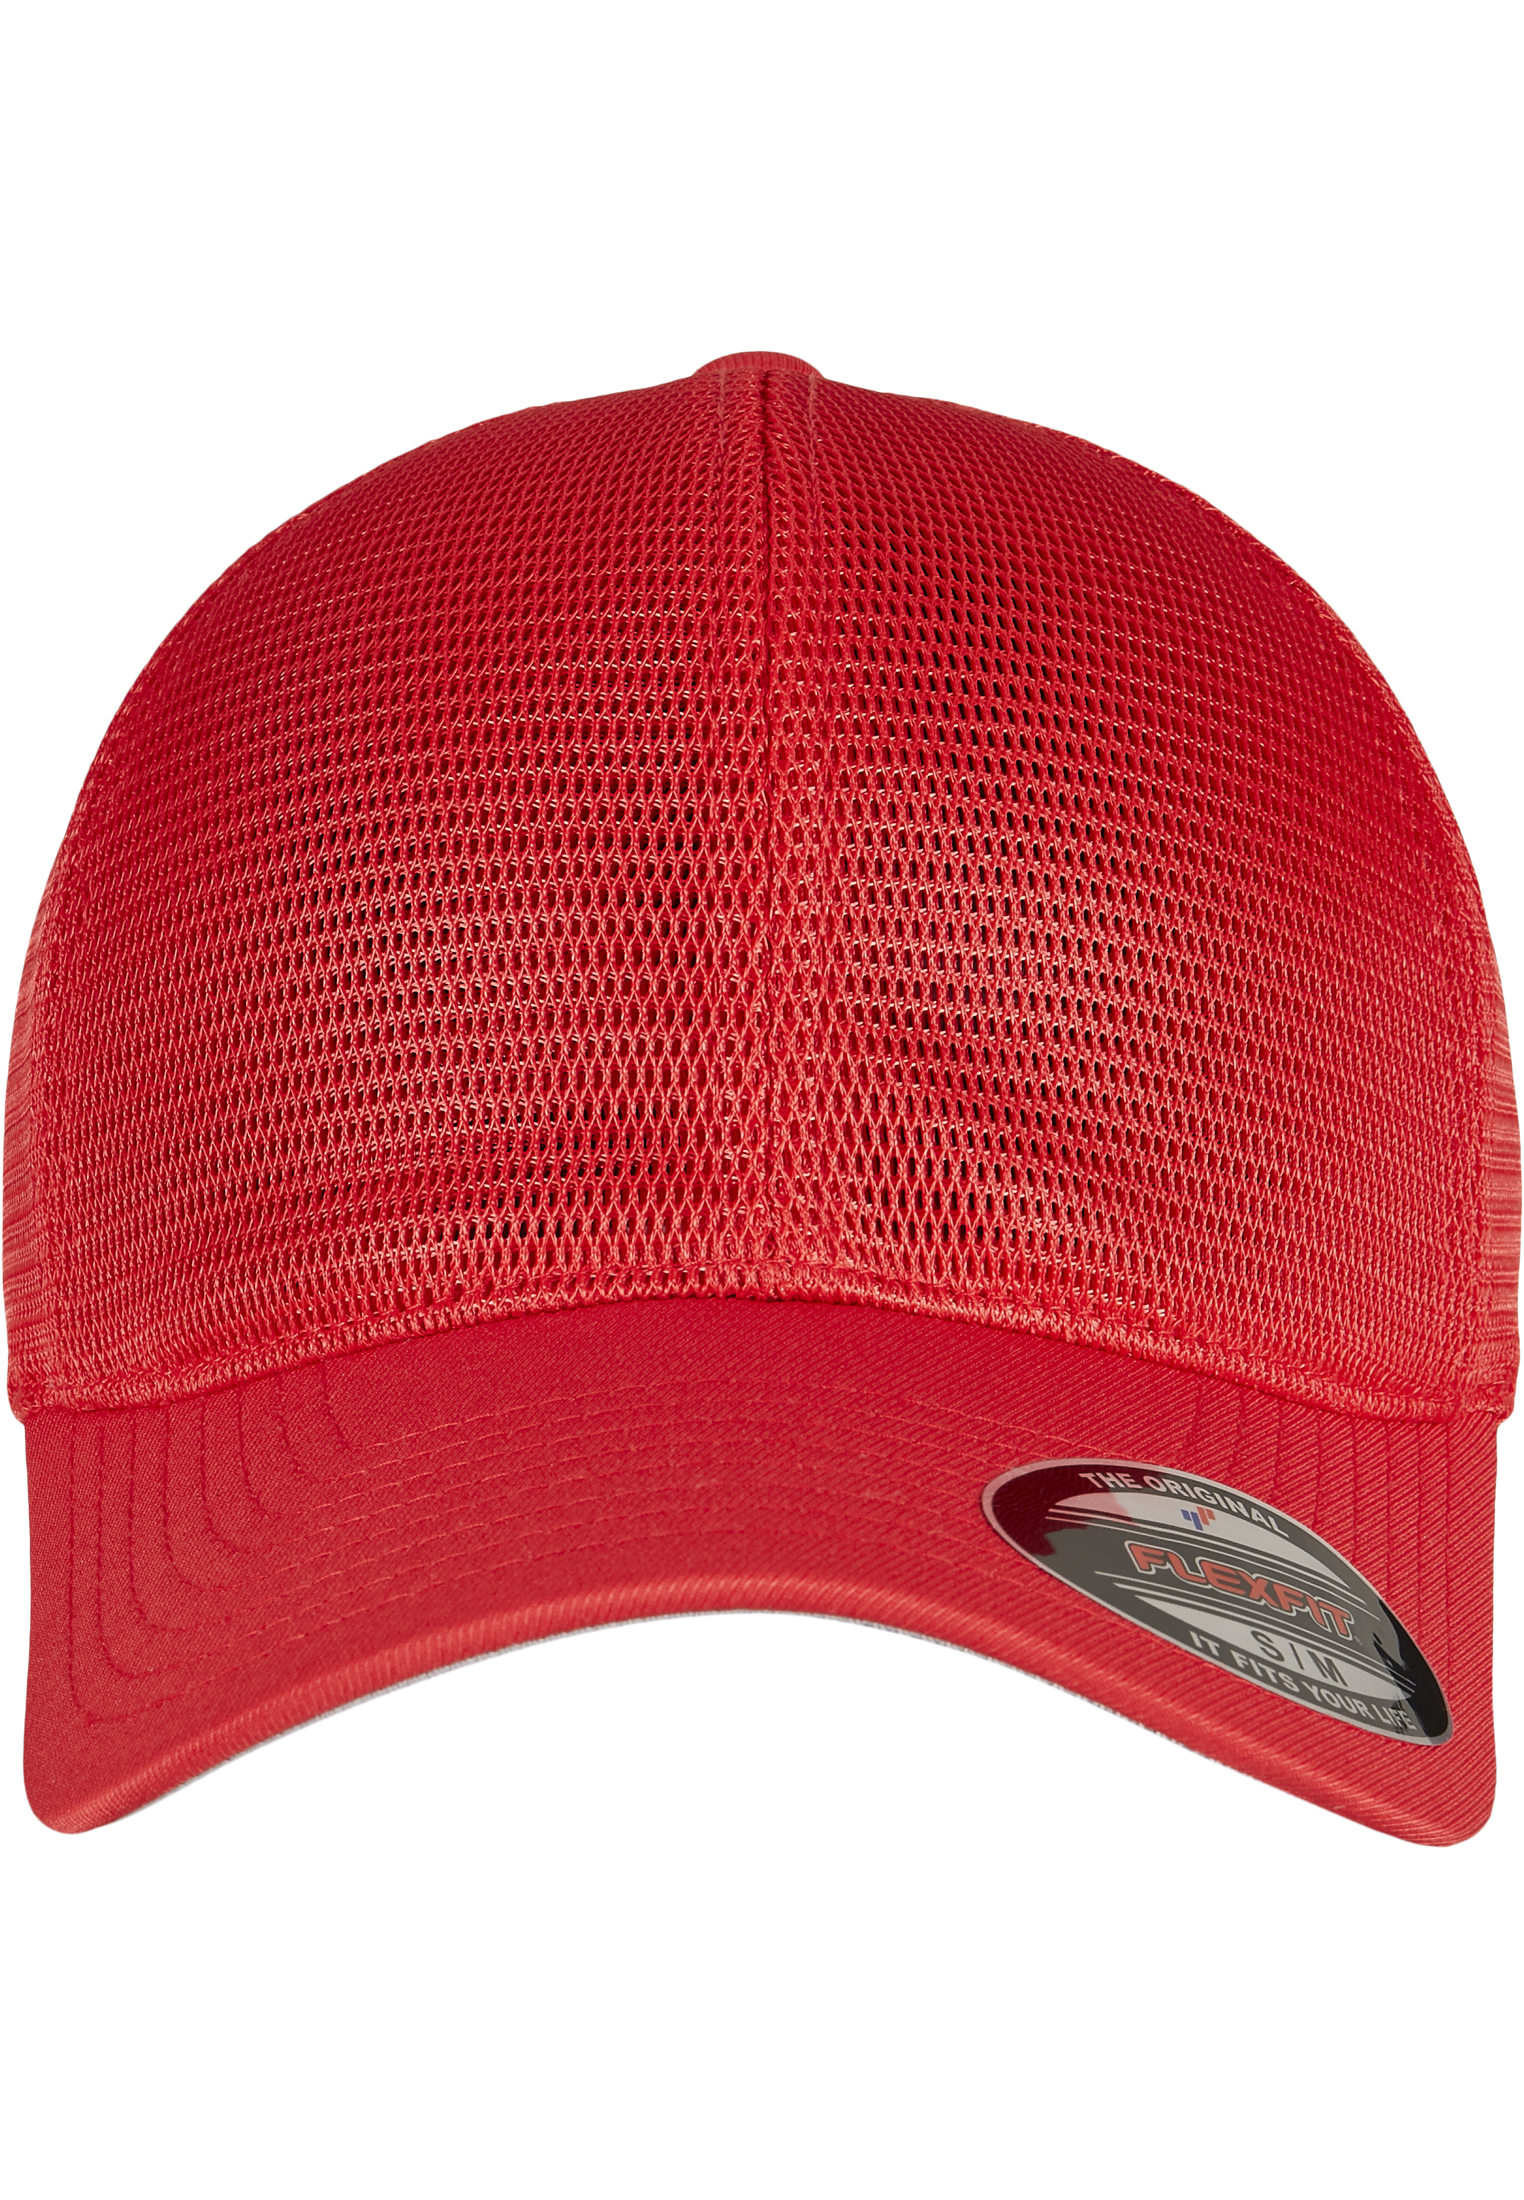 Trucker FLEXFIT 360 OMNIMESH CAP in Farbe red